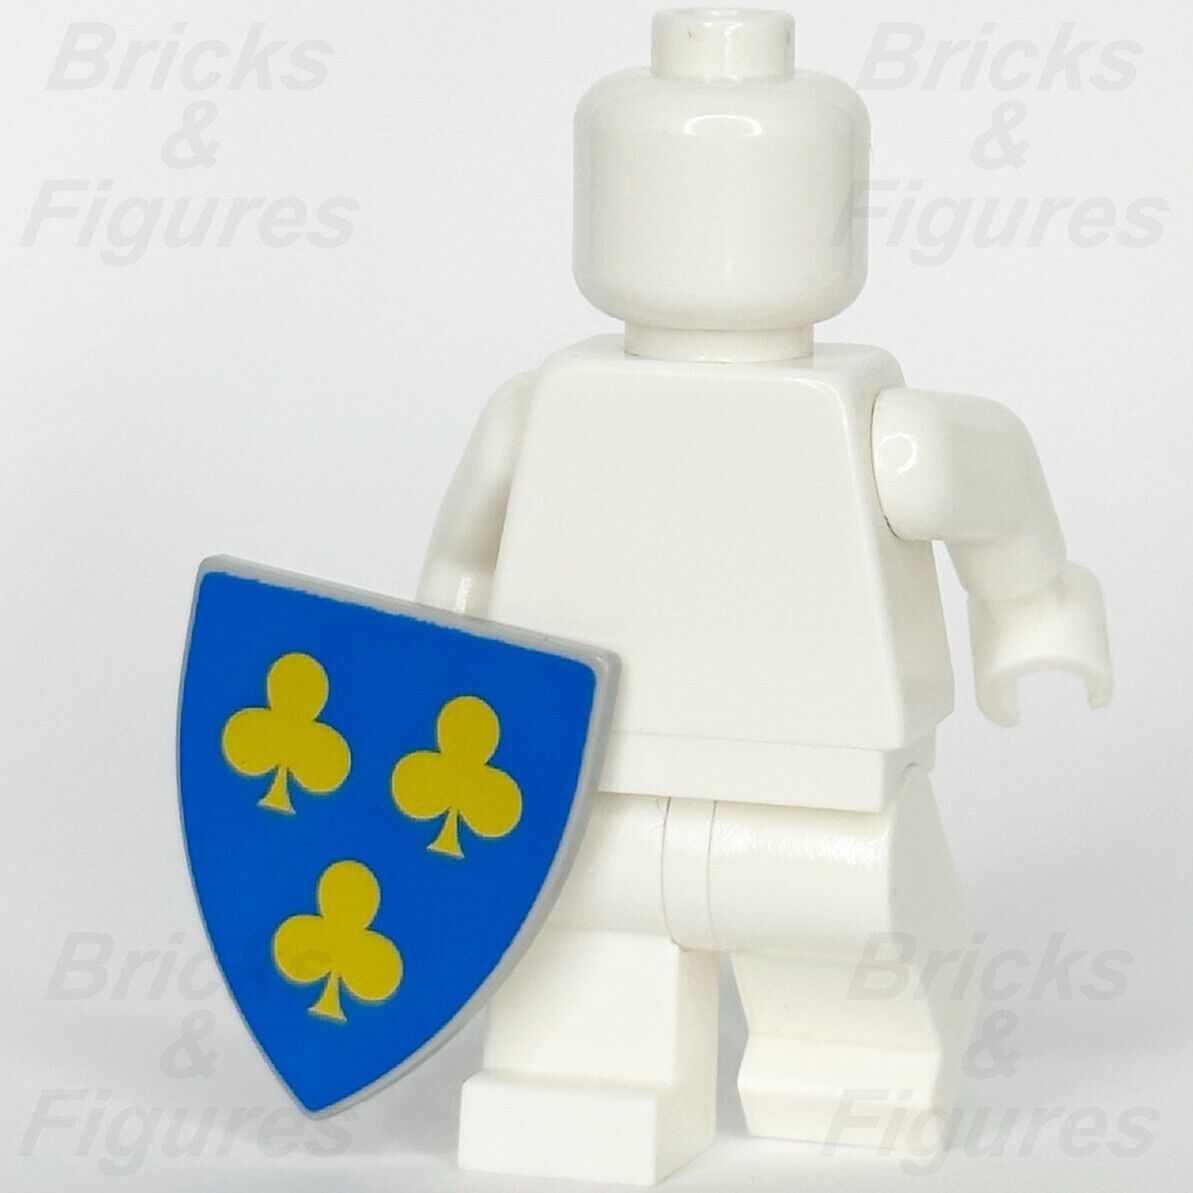 LEGO Castle 1 x Shield Blue with 3 Yellow Trefoils Minifigure Weapon Part 10305 - Bricks & Figures